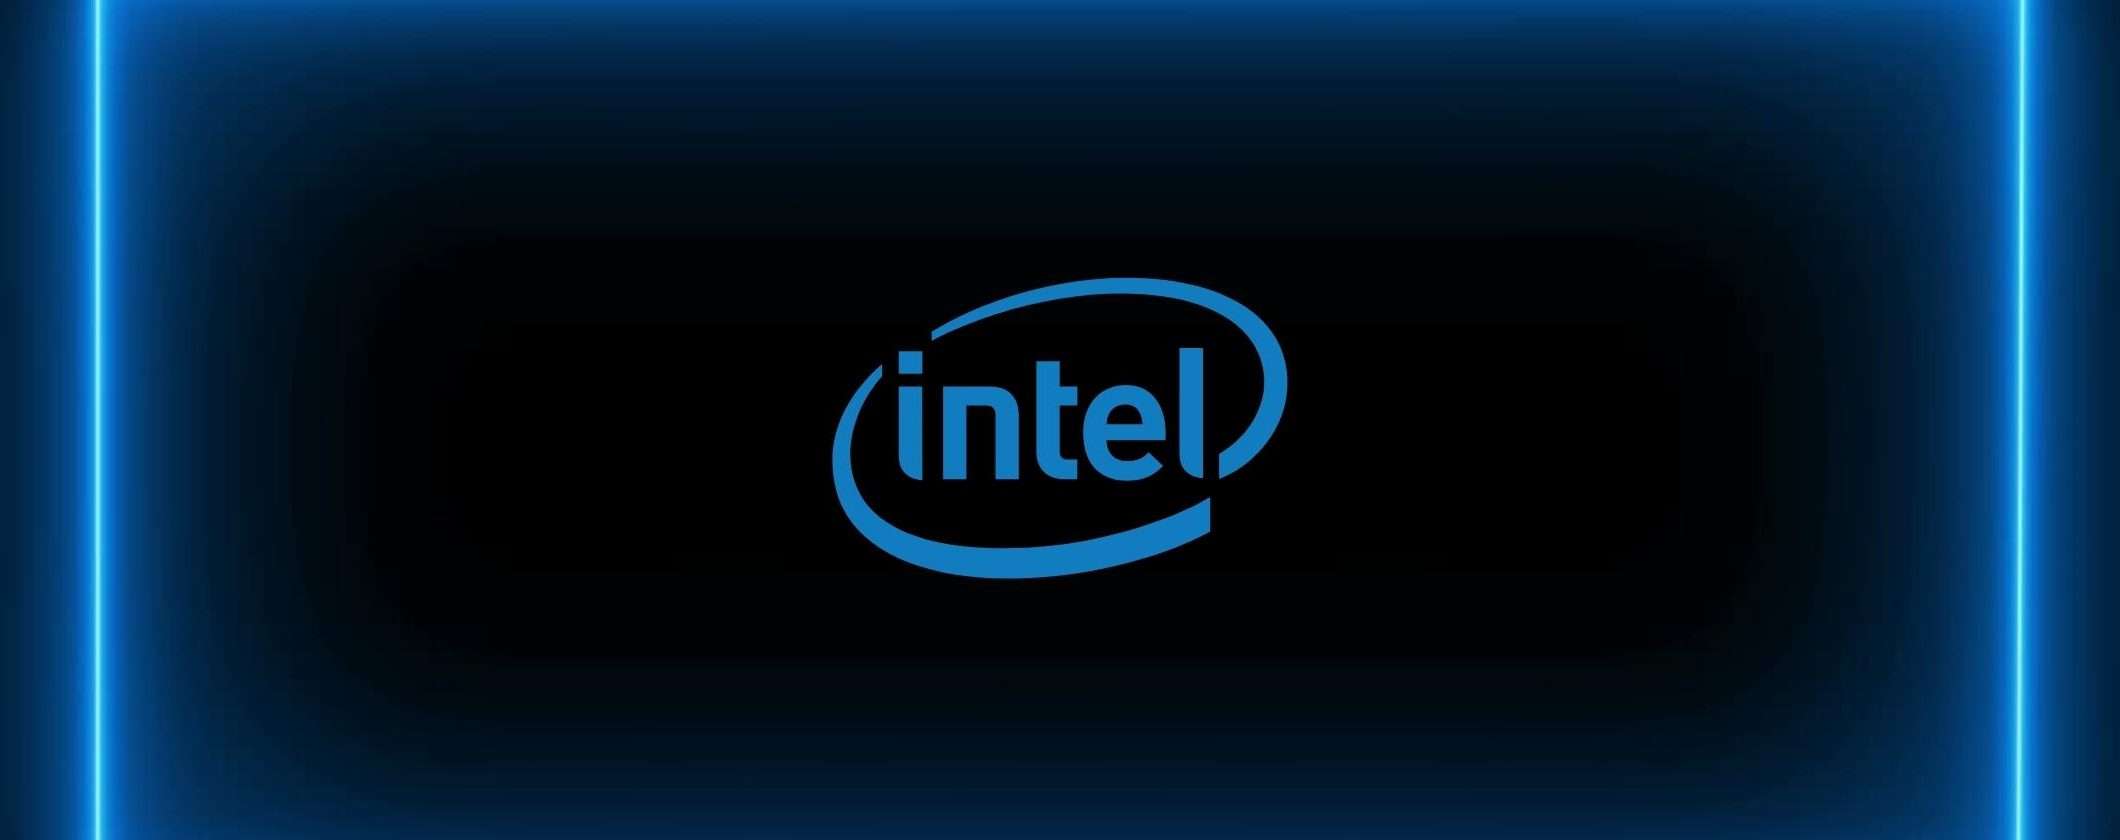 Intel ha lanciato i suoi nuovi chip per il mining a risparmio energetico